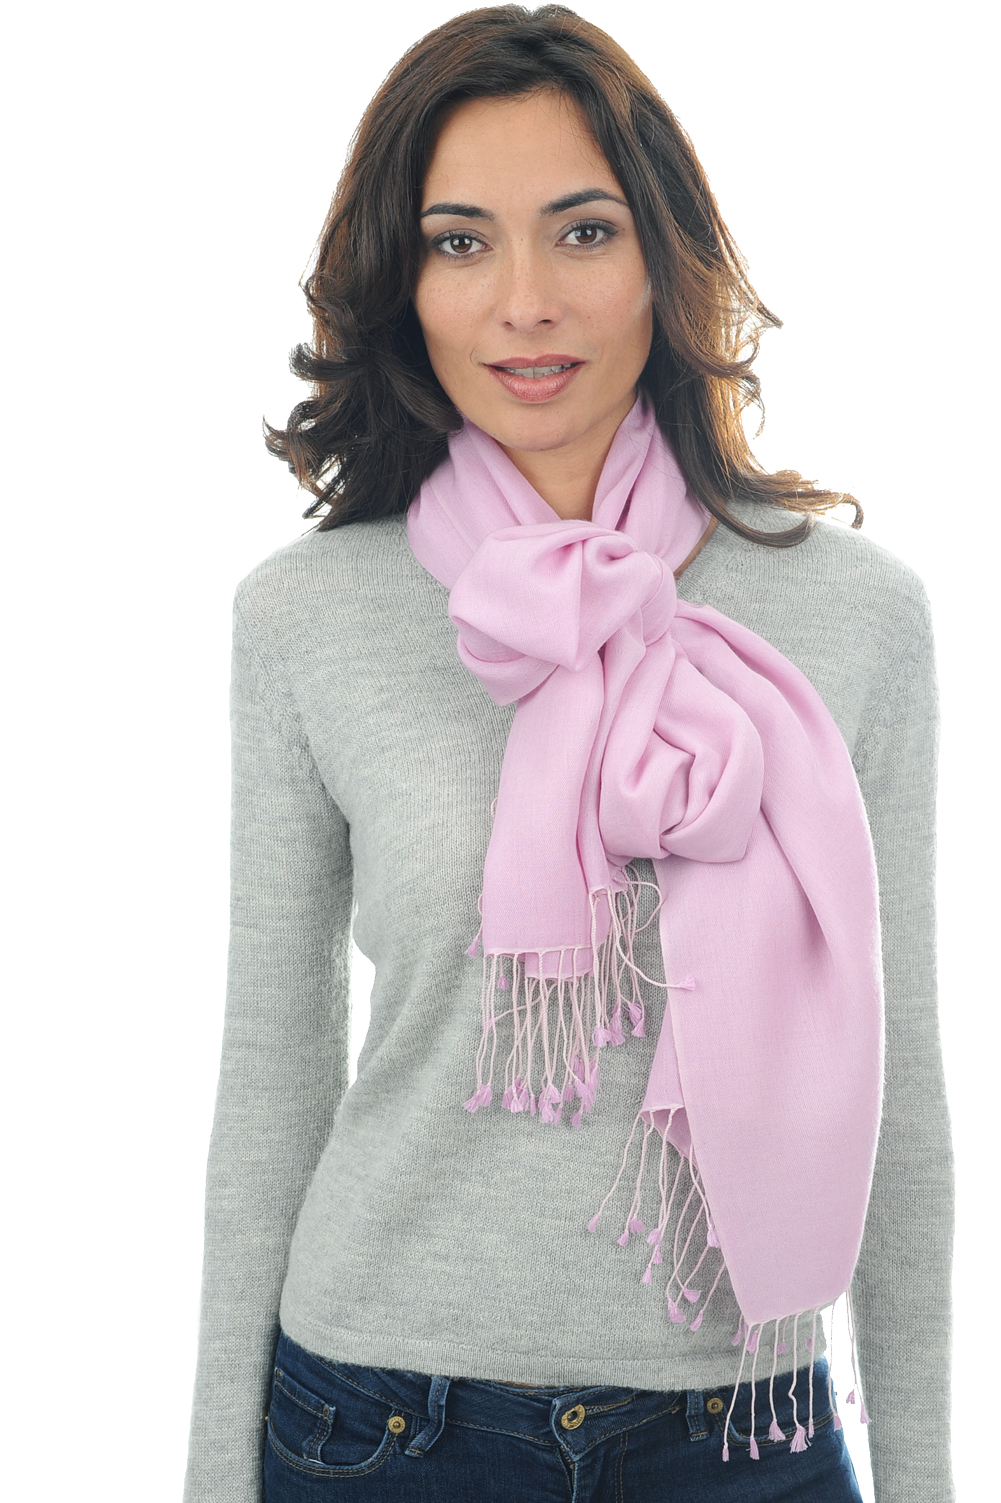 Cashmere & Silk ladies shawls platine pink lavender 201 cm x 71 cm